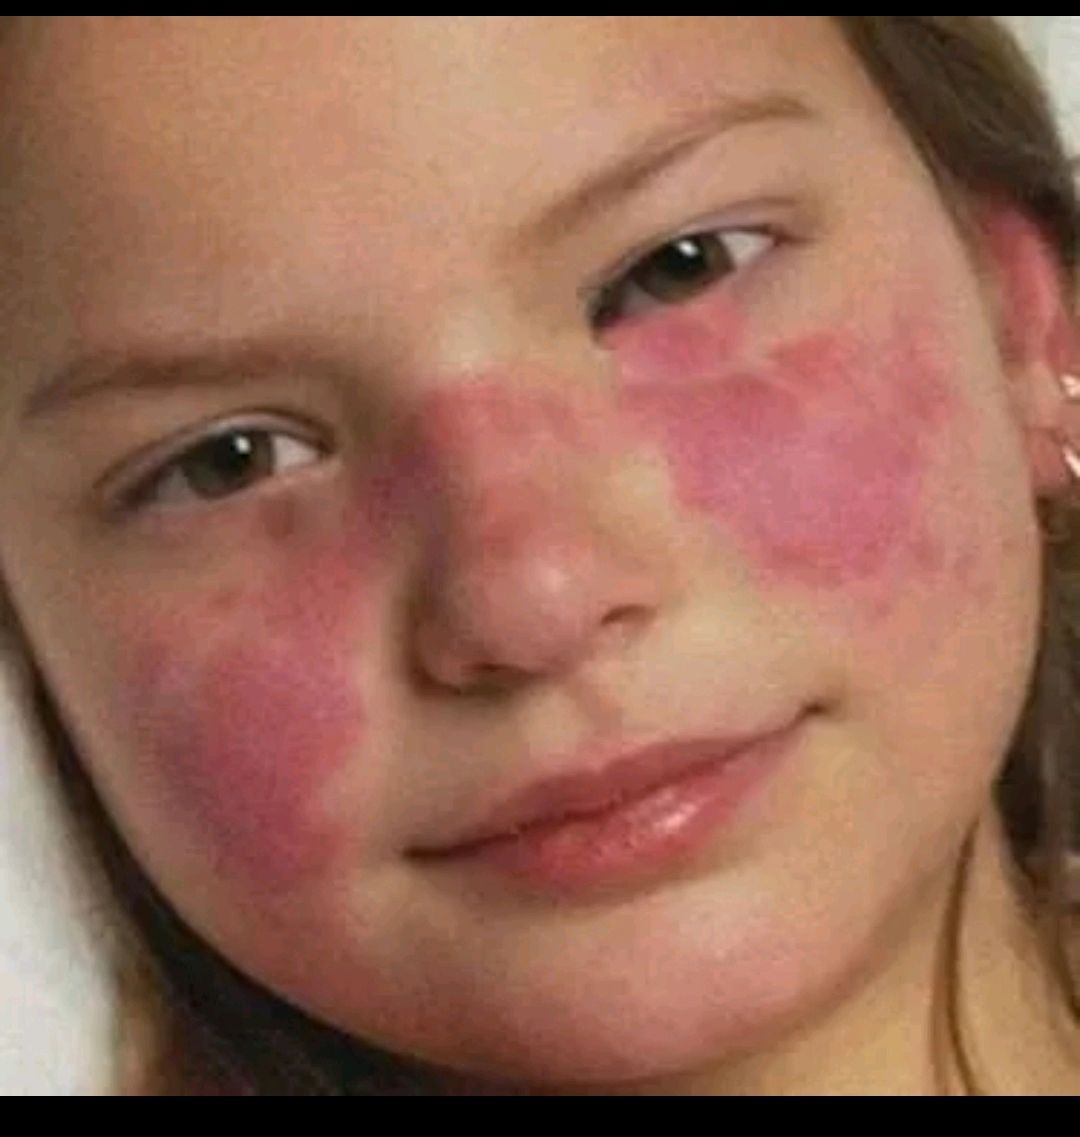 典型的蝶形红斑表现为颊部皮疹跨过鼻梁,出现在1/3~1/2的患病儿童中.